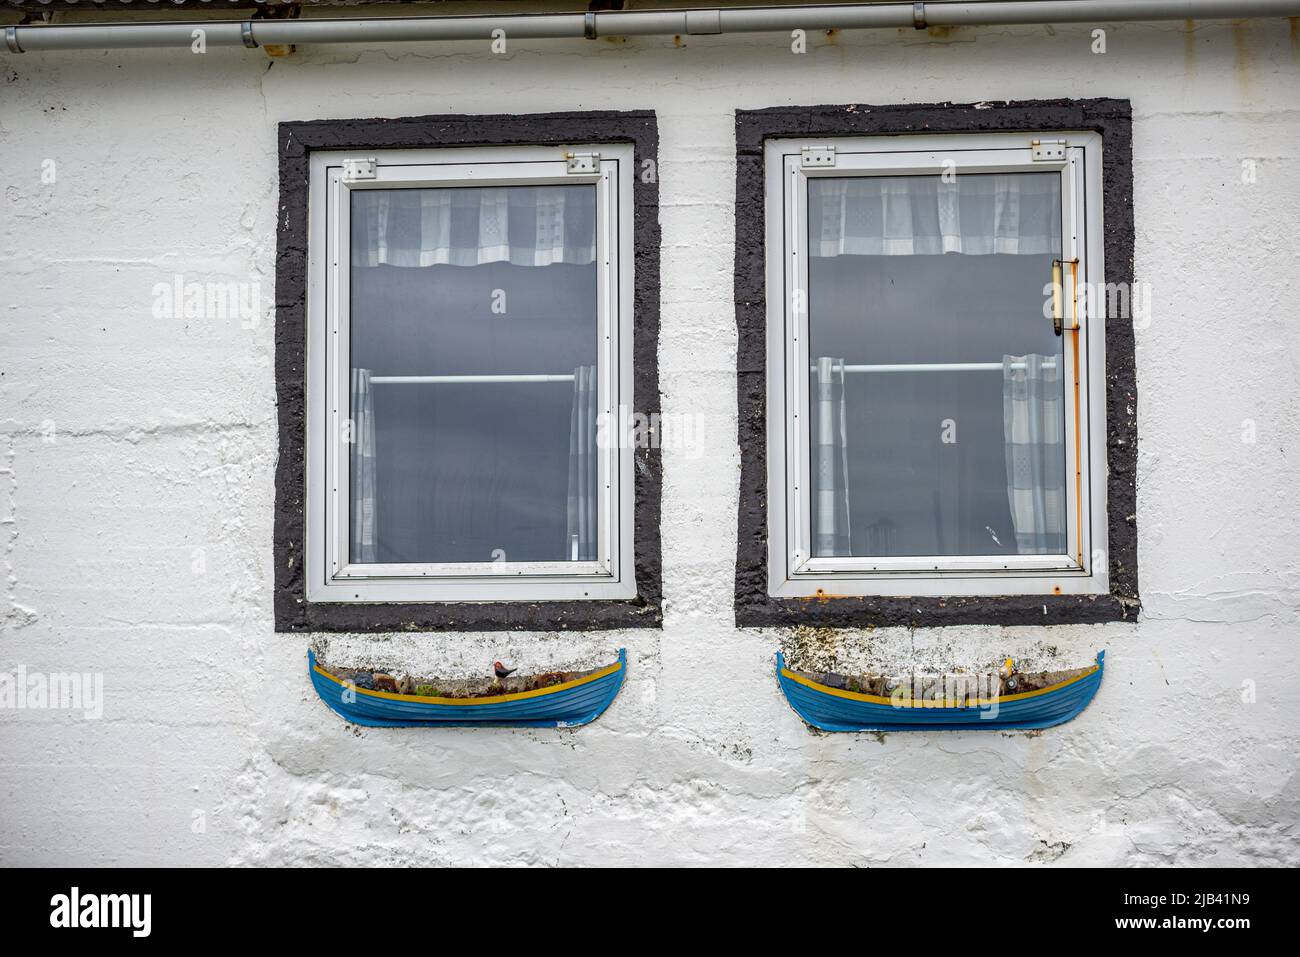 Deux fenêtres avec pots de fleurs en forme de bateaux, village de Trollanes, île de Kalsoy, îles Féroé Banque D'Images